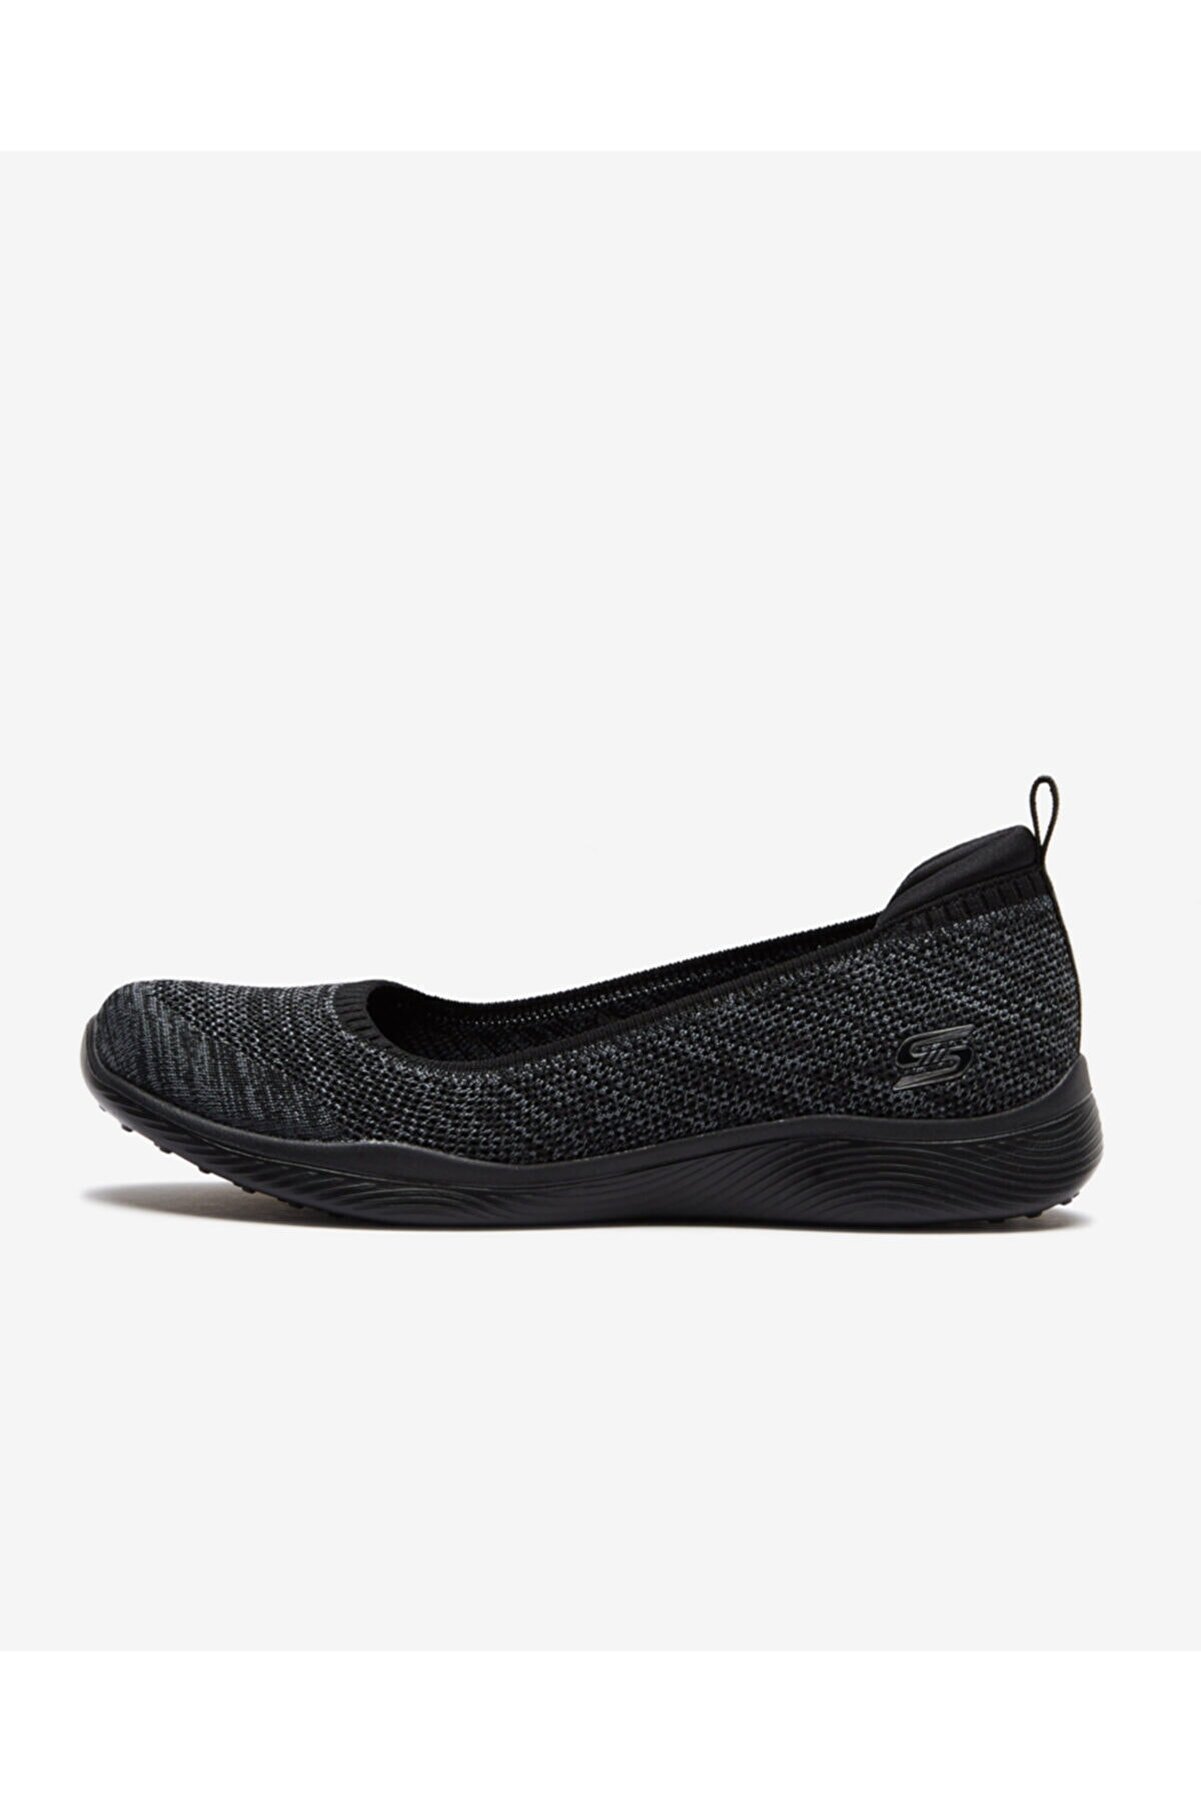 Skechers Kadın Siyah Günlük Ayakkabı